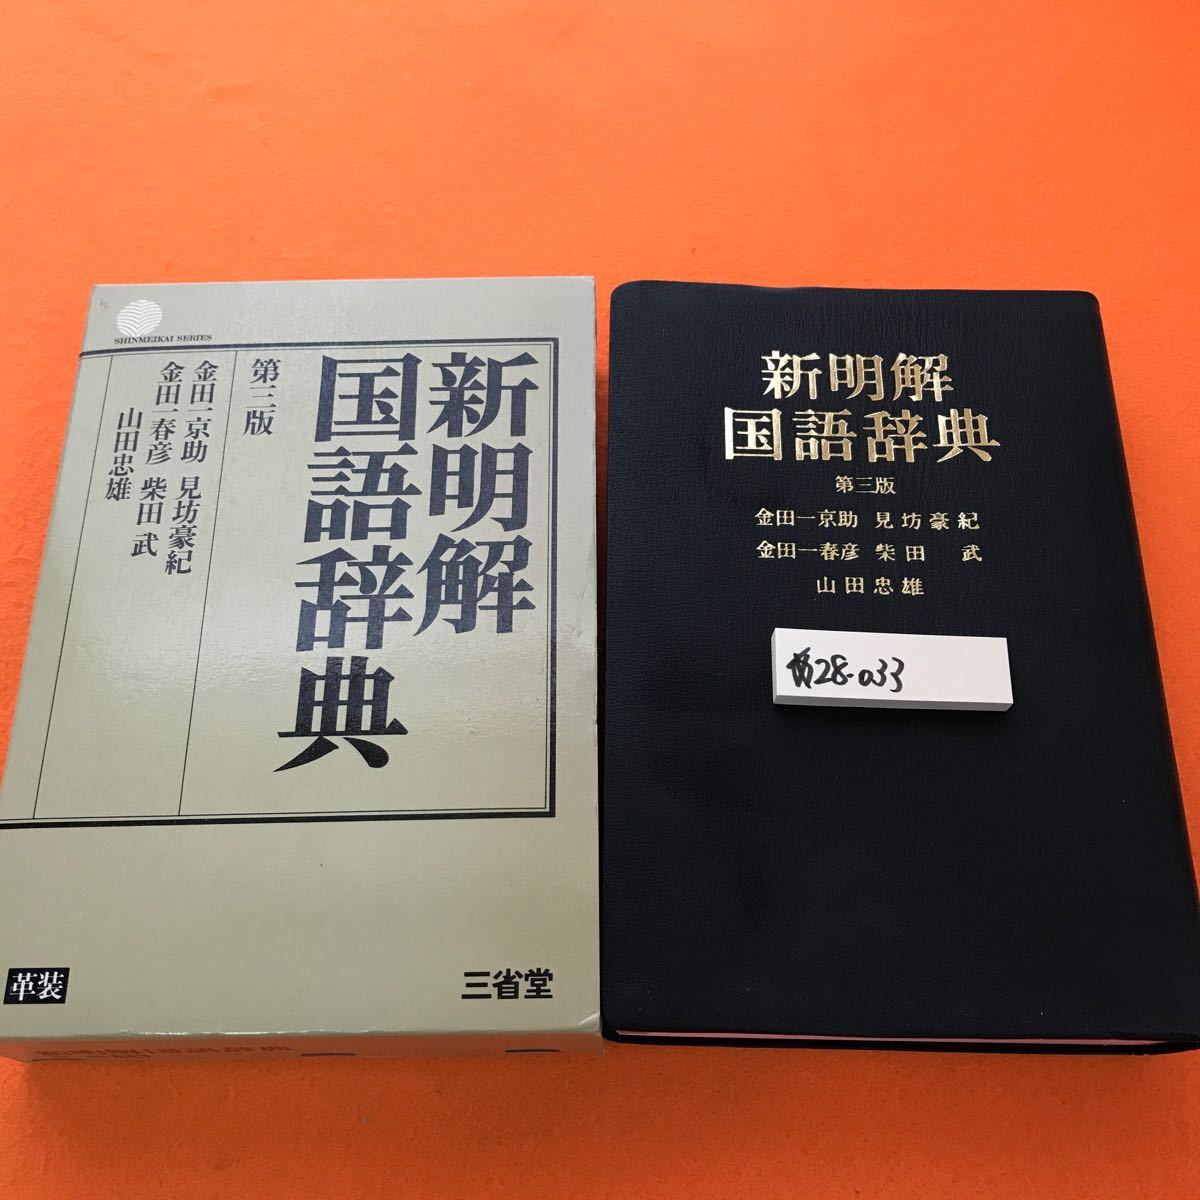 あ28-033 新明解国語辞典 第三版 三省堂_画像1